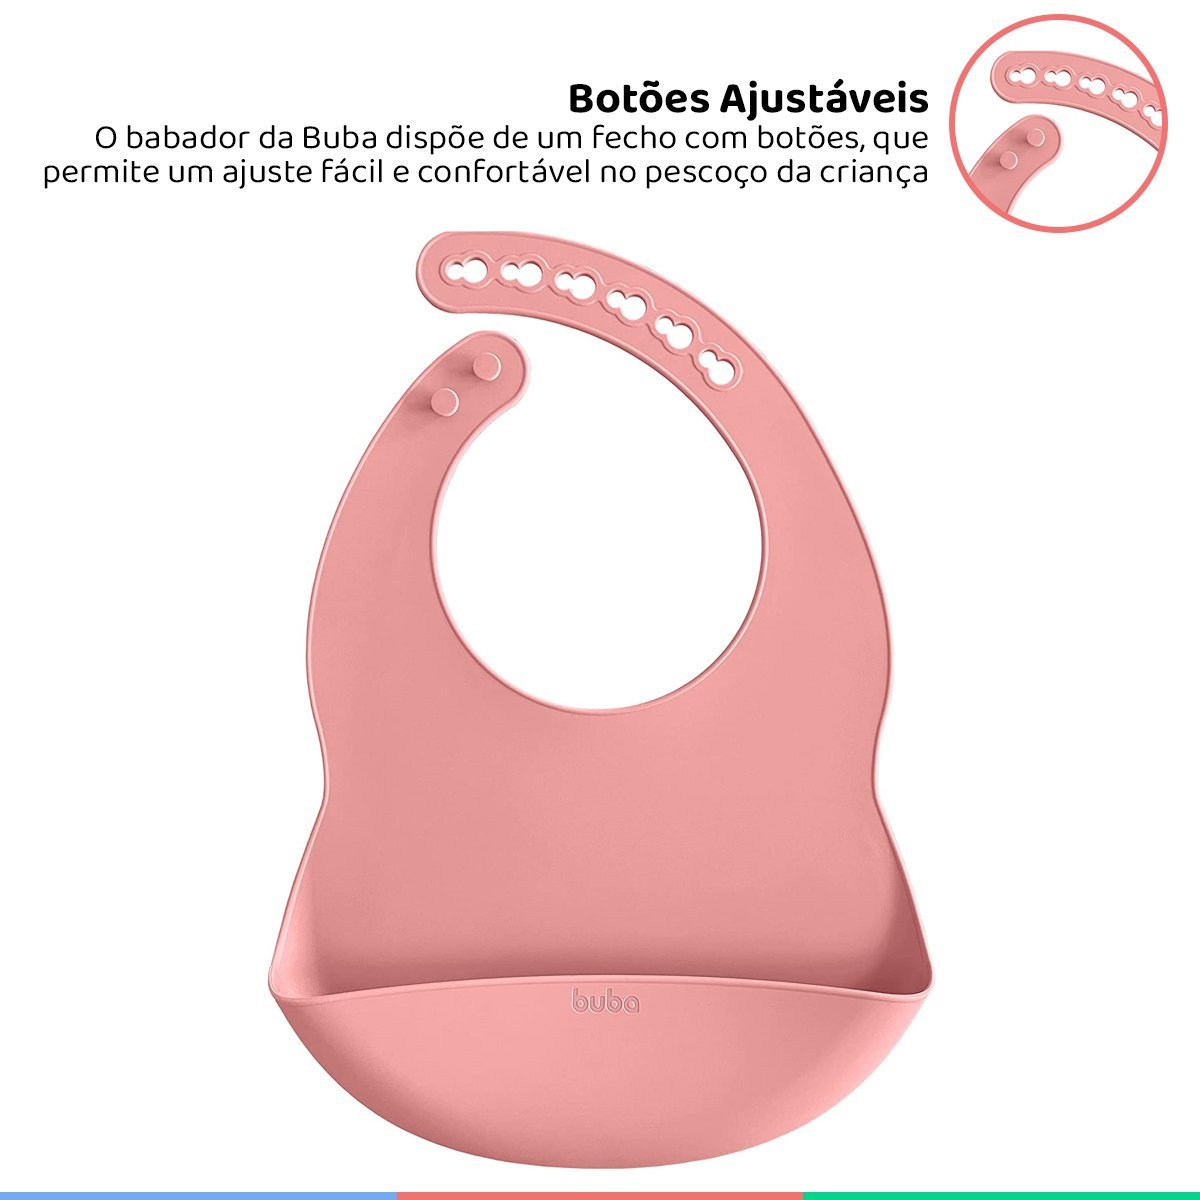 Babador de Silicone Bebe Impermeável Coletor de Migalhas Infantil +3 Meses Botões Ajustável Rosa Bub - 2